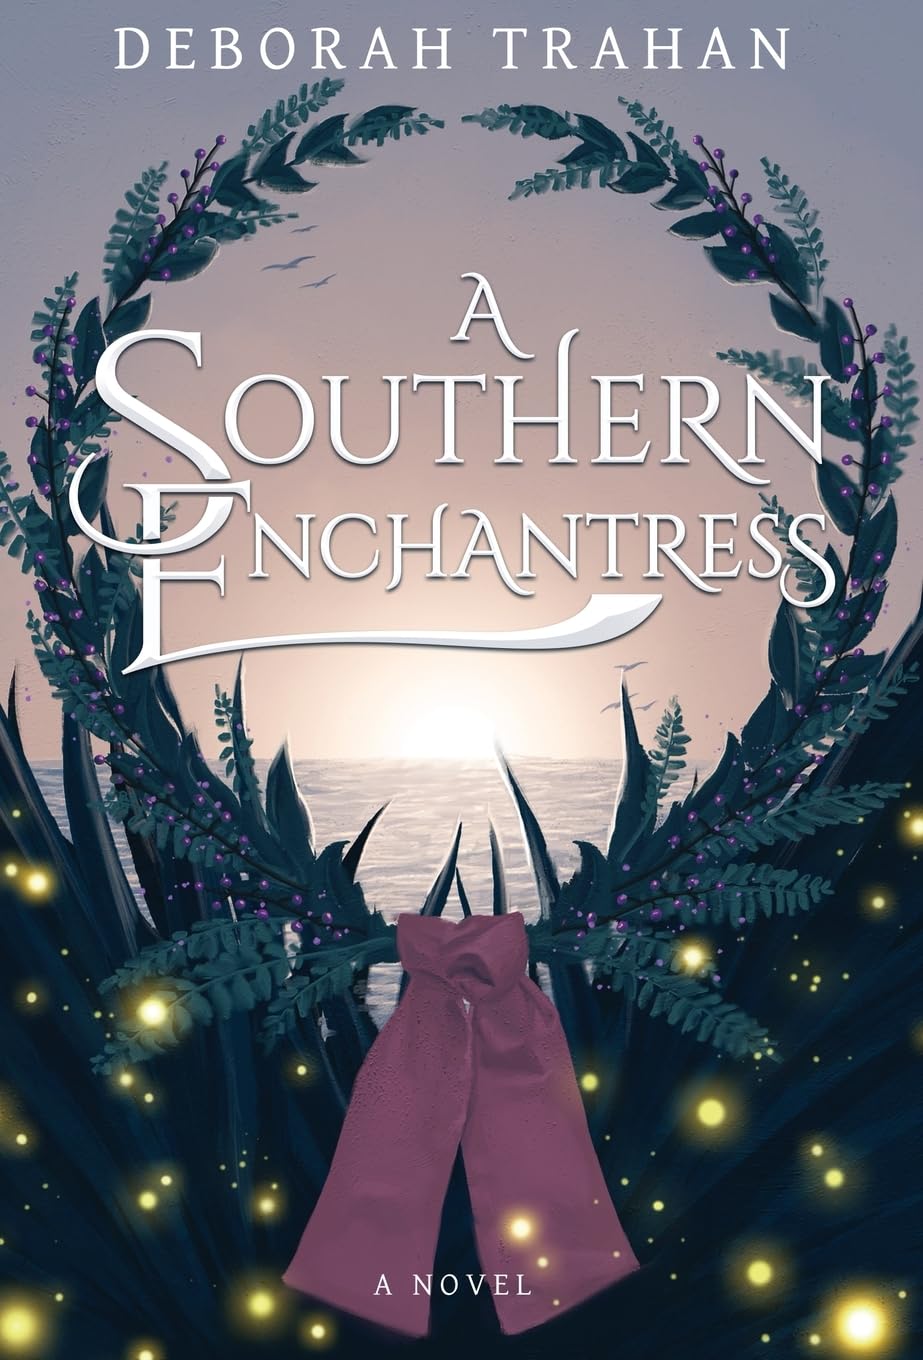 A Southern Enchantress by Deborah Trahan